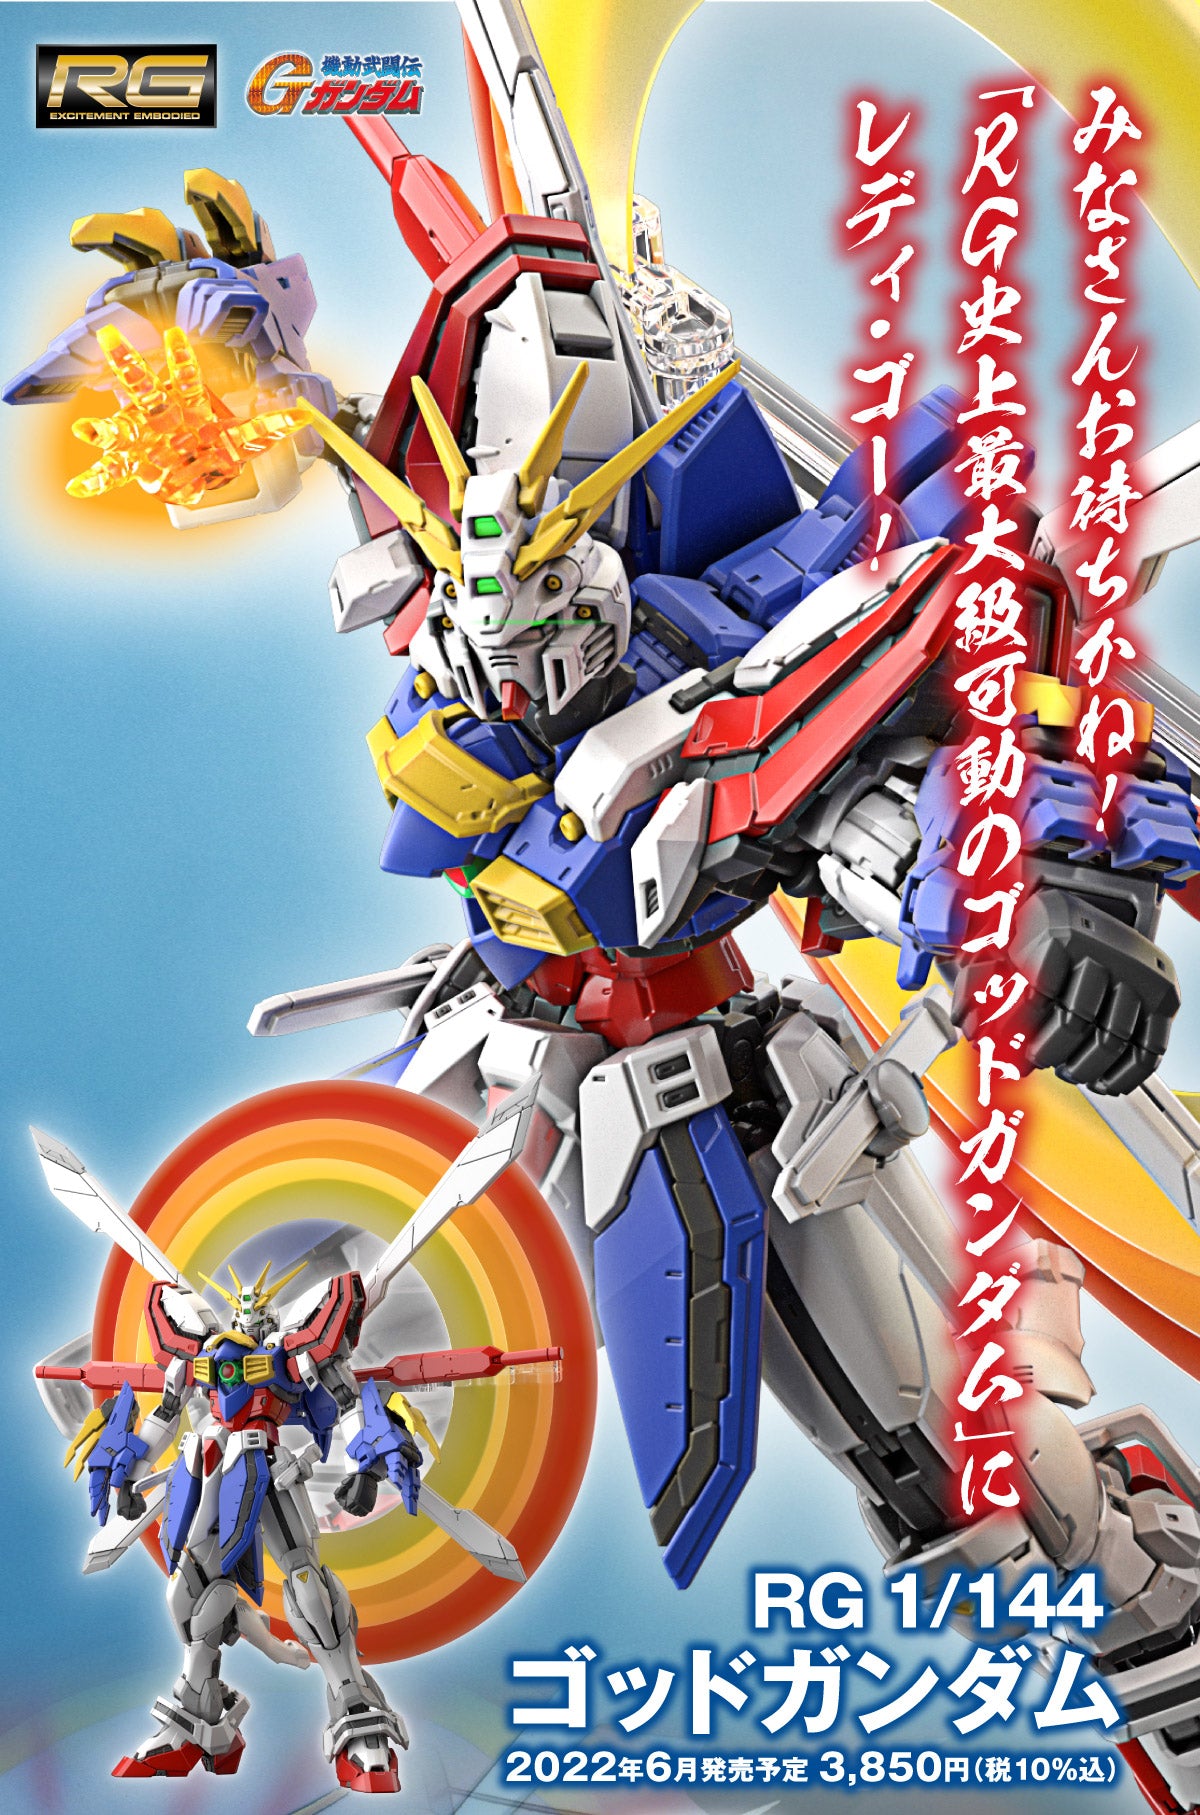 RG God Gundam